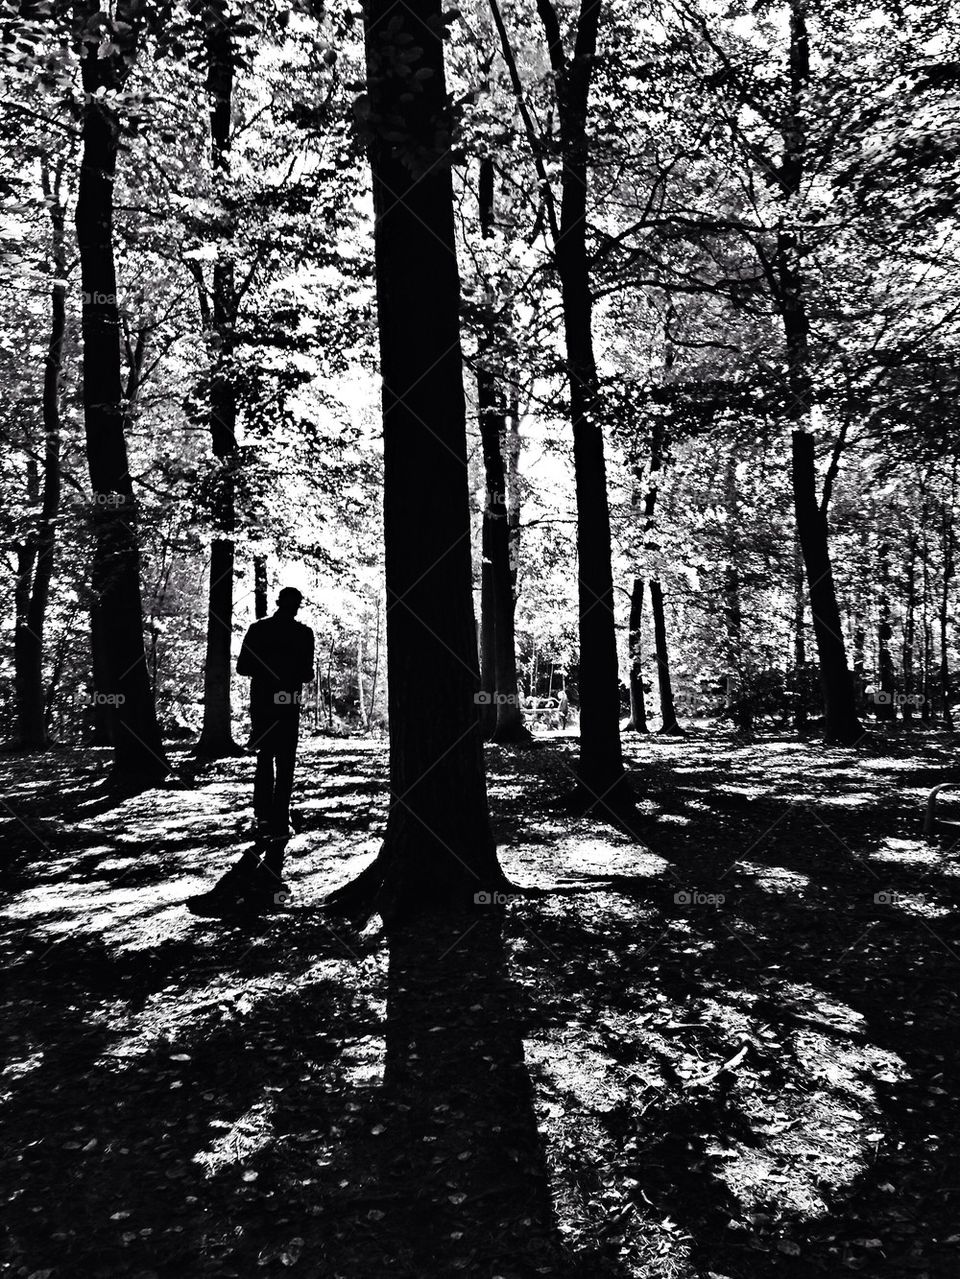 trees woods shadows man by hannahdagogo